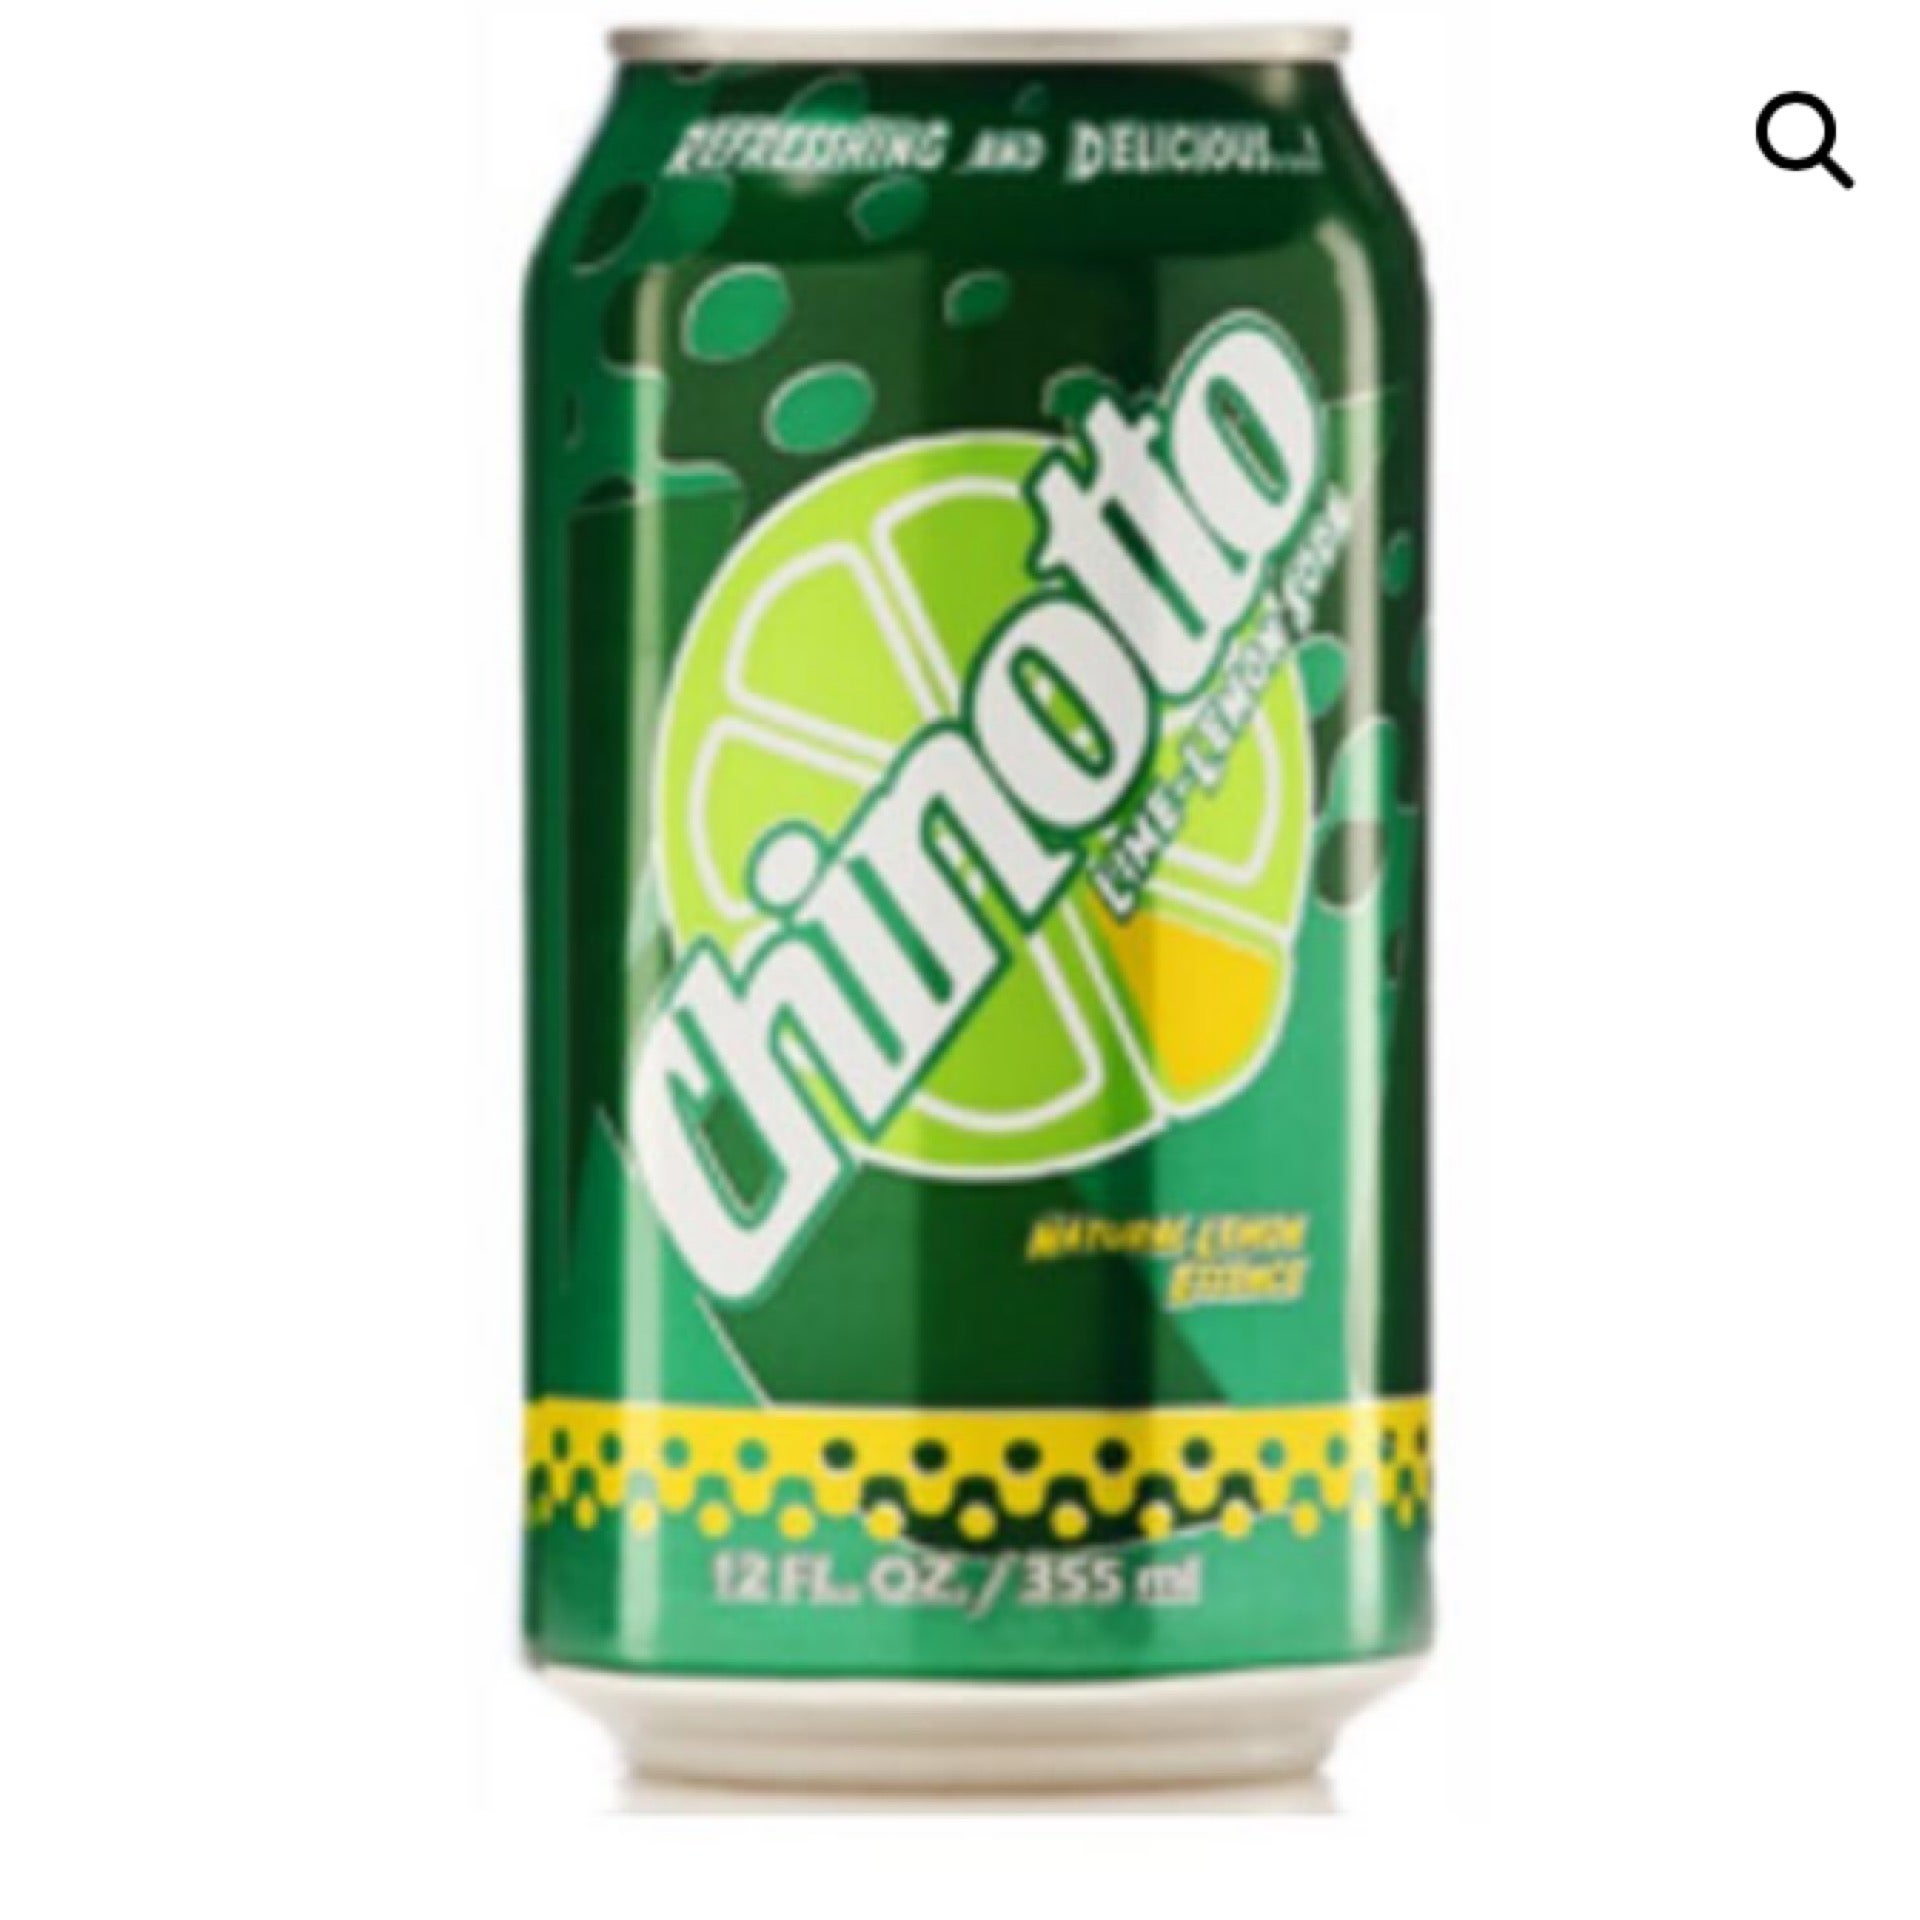 Concentrati Soda Mix: Chinotto